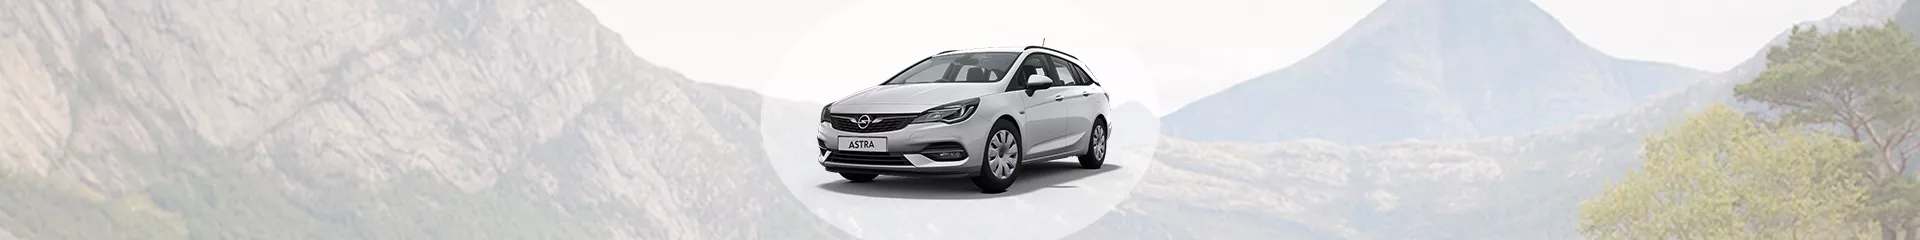 Melbourne Bewolkt ik ontbijt Opel Astra dakdragers kopen bij dé specialist